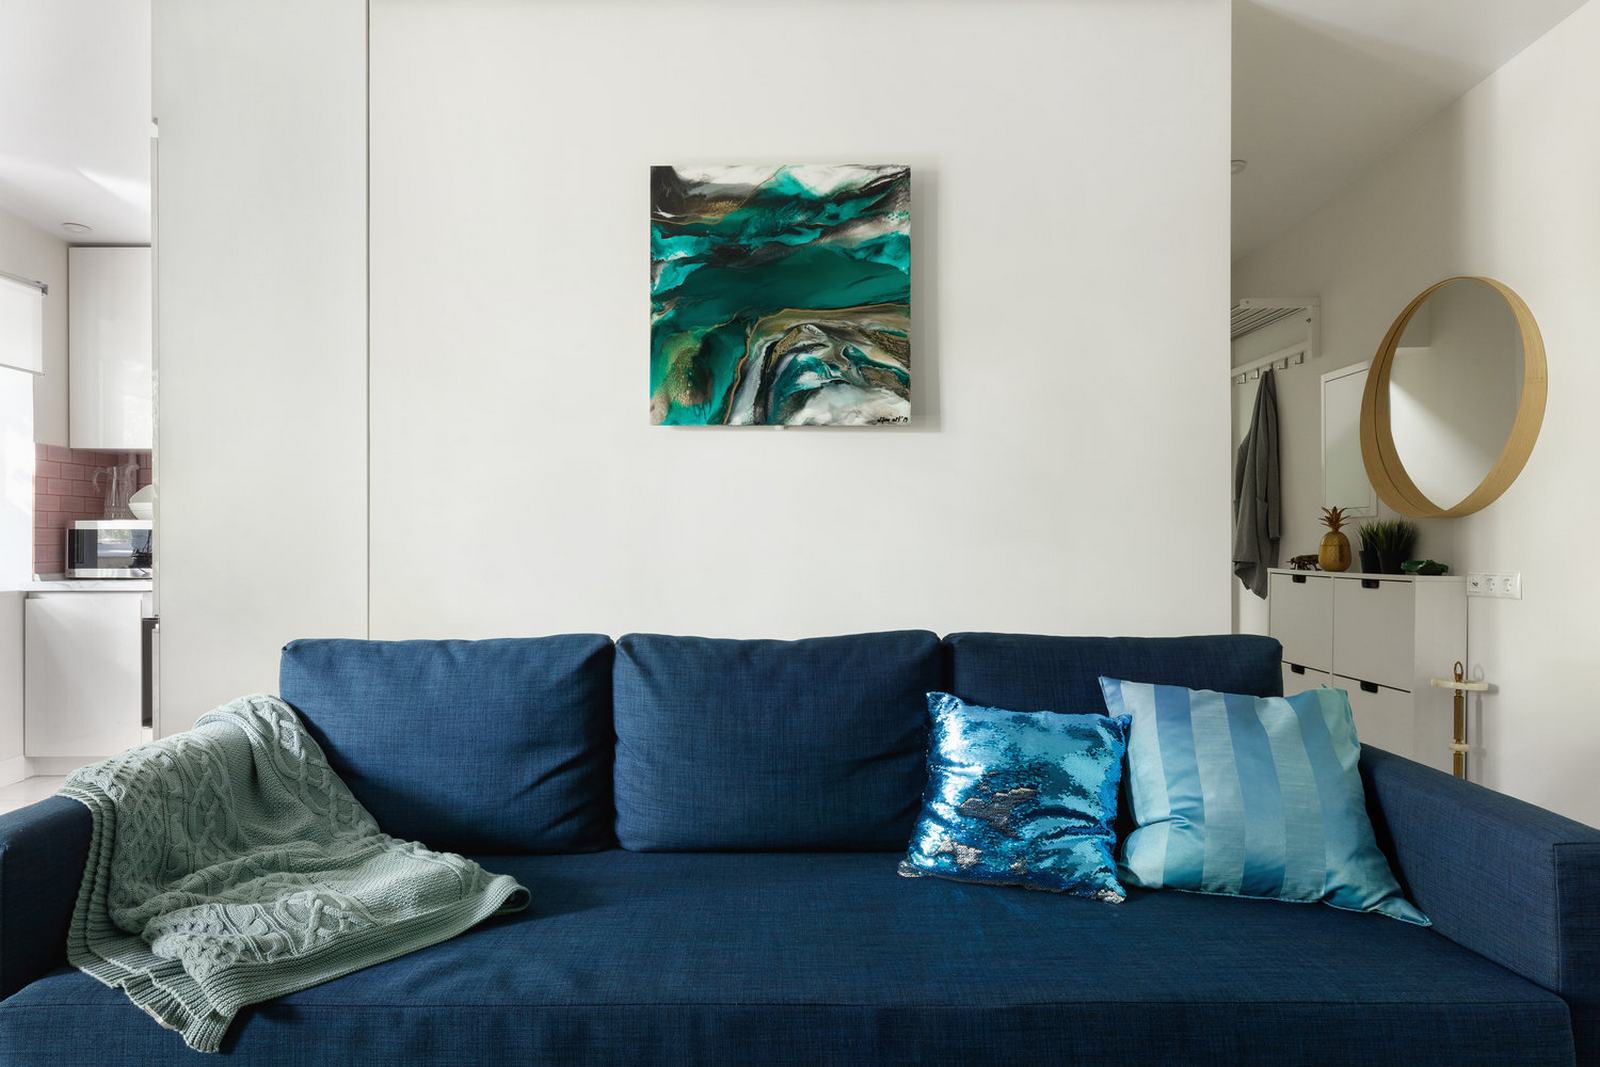 Bức tường đằng sau ghế sofa được trang trí bởi bức tranh trừu tượng, với gam màu pha trộn giữa xanh lam và xanh ngọc lục bảo để tạo sự liên kết bằng thị giác ấn tượng.